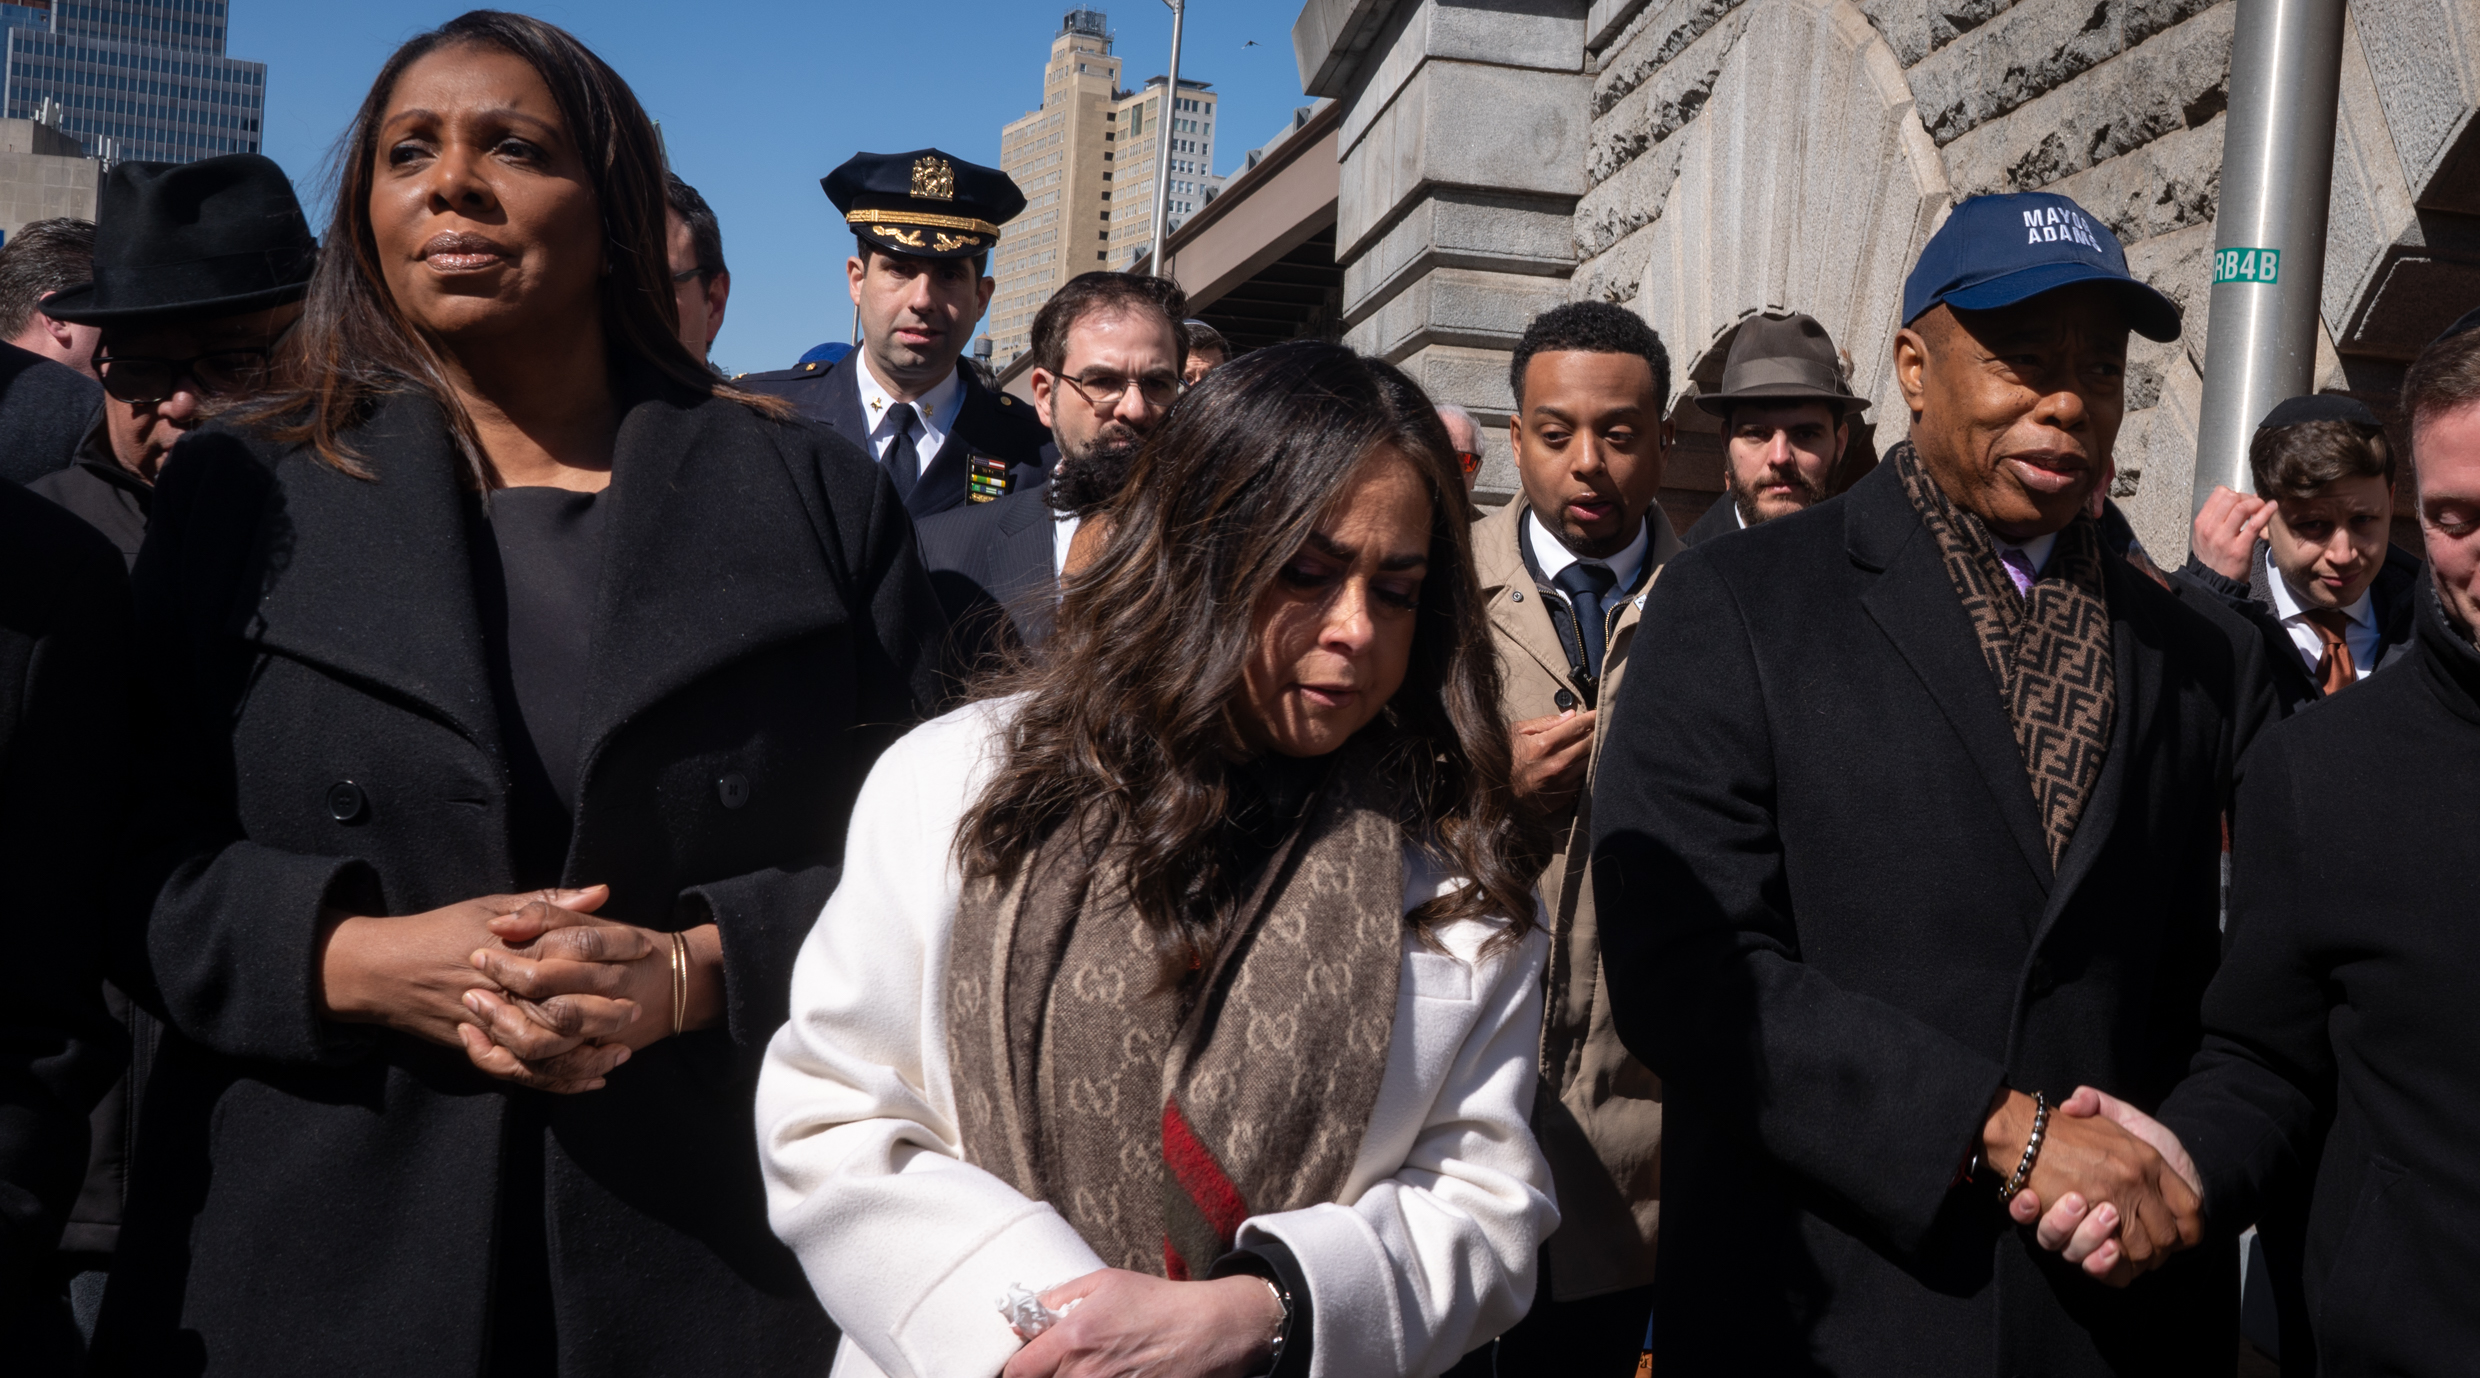 On 30th anniversary of her son’s death in a terror attack at the Brooklyn Bridge, Devorah Halberstam decries ‘plague’ of hatred